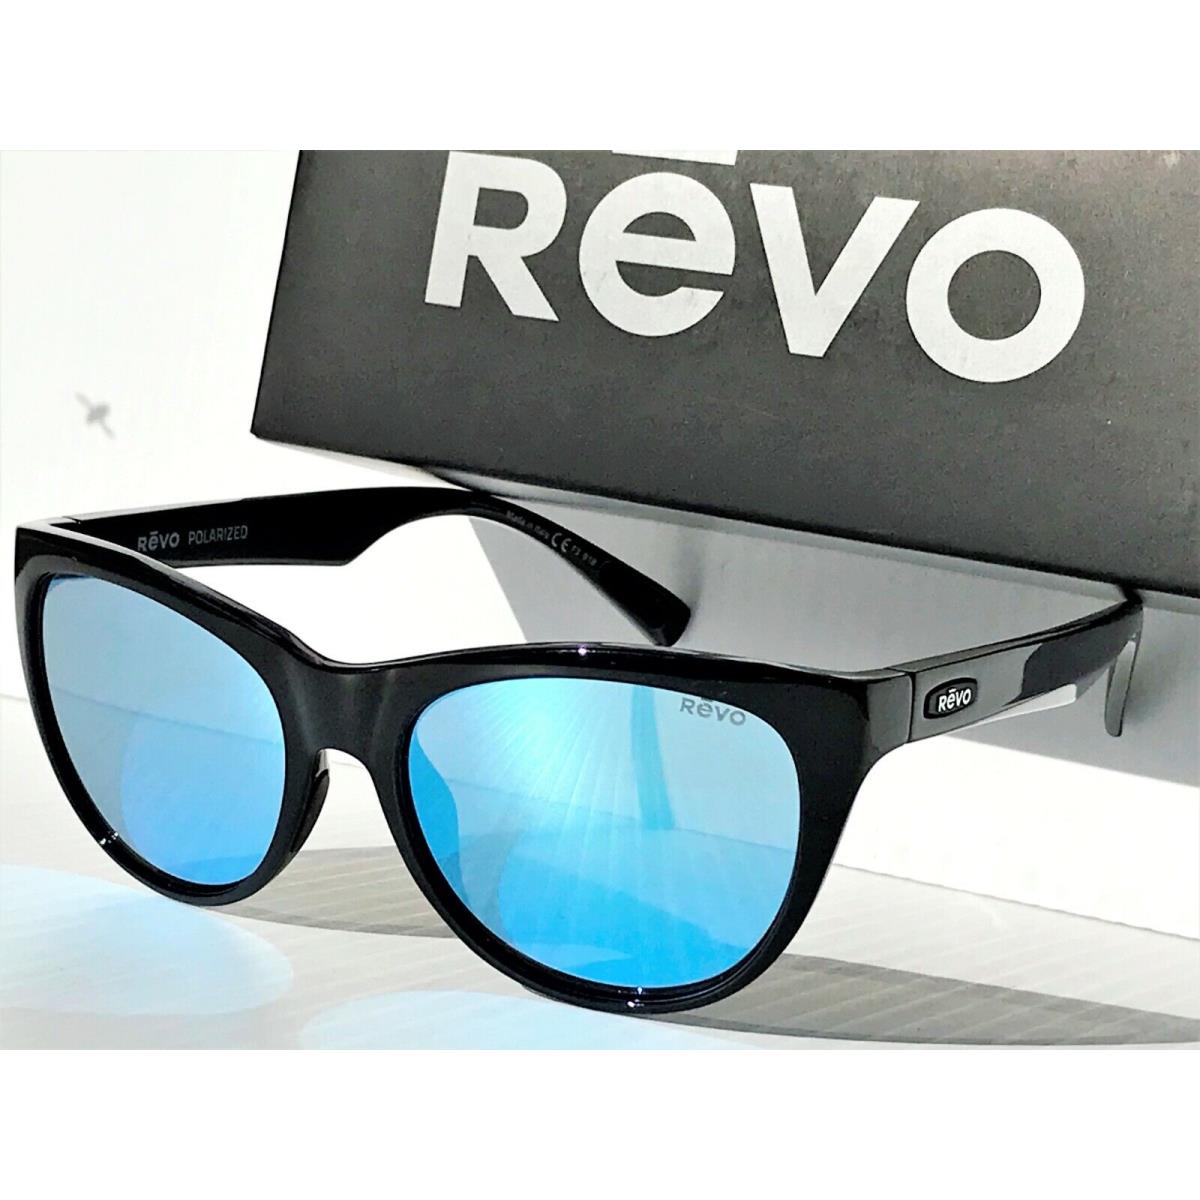 Revo sunglasses Barclay - Black Frame, Blue Lens